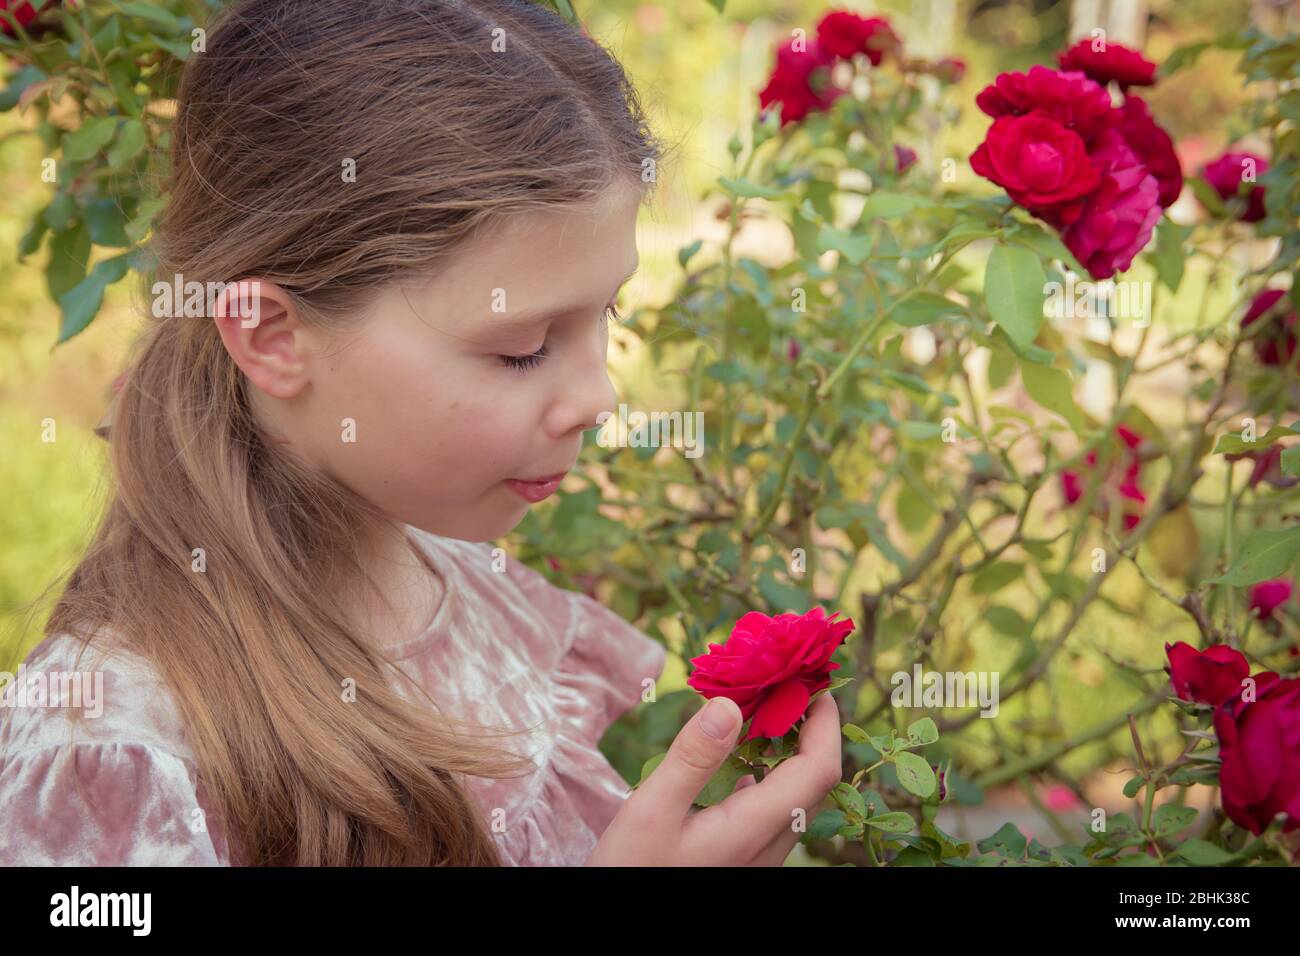 Une jolie fille aux cheveux bruns sent les roses dans le jardin Banque D'Images